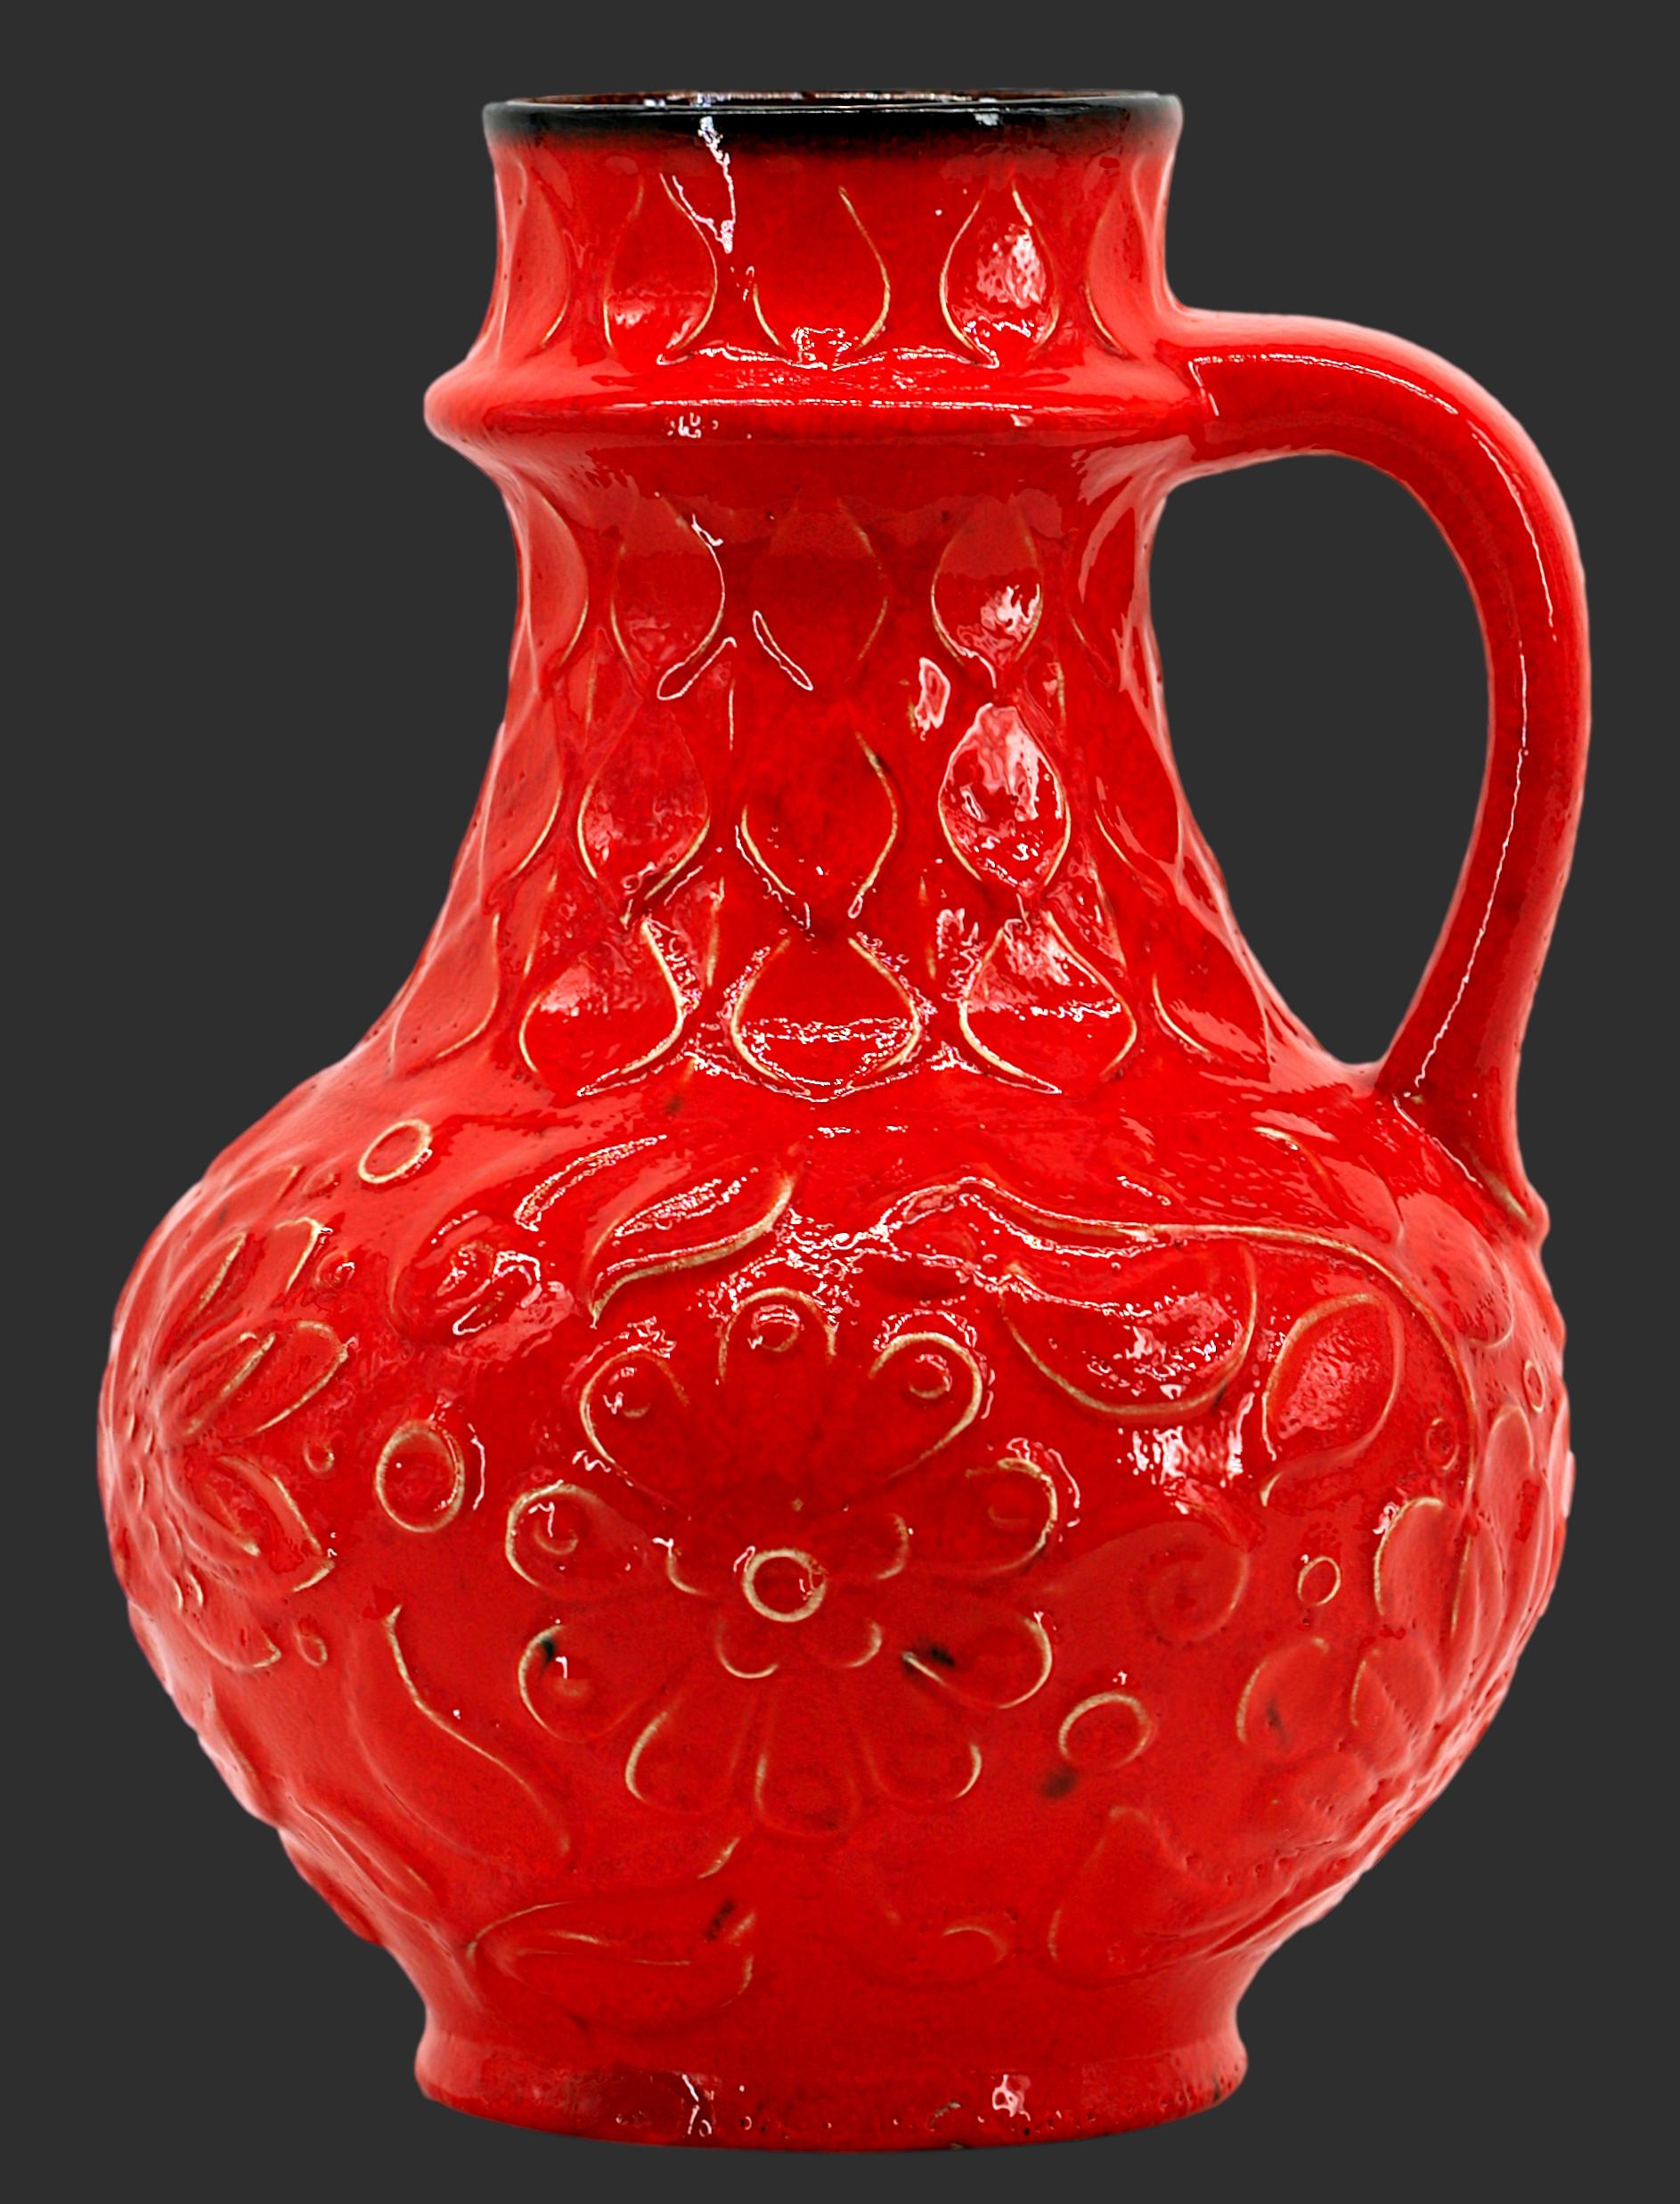 Vase en céramique allemand du milieu du siècle, Allemagne, années 1950. Vase à anse. Fantastique couleur rouge sur un camée à la décoration florale typique des années 50. Hauteur : 30cm - 11.8 in, Diamètre : 22cm - 8.7 in. Marqué 